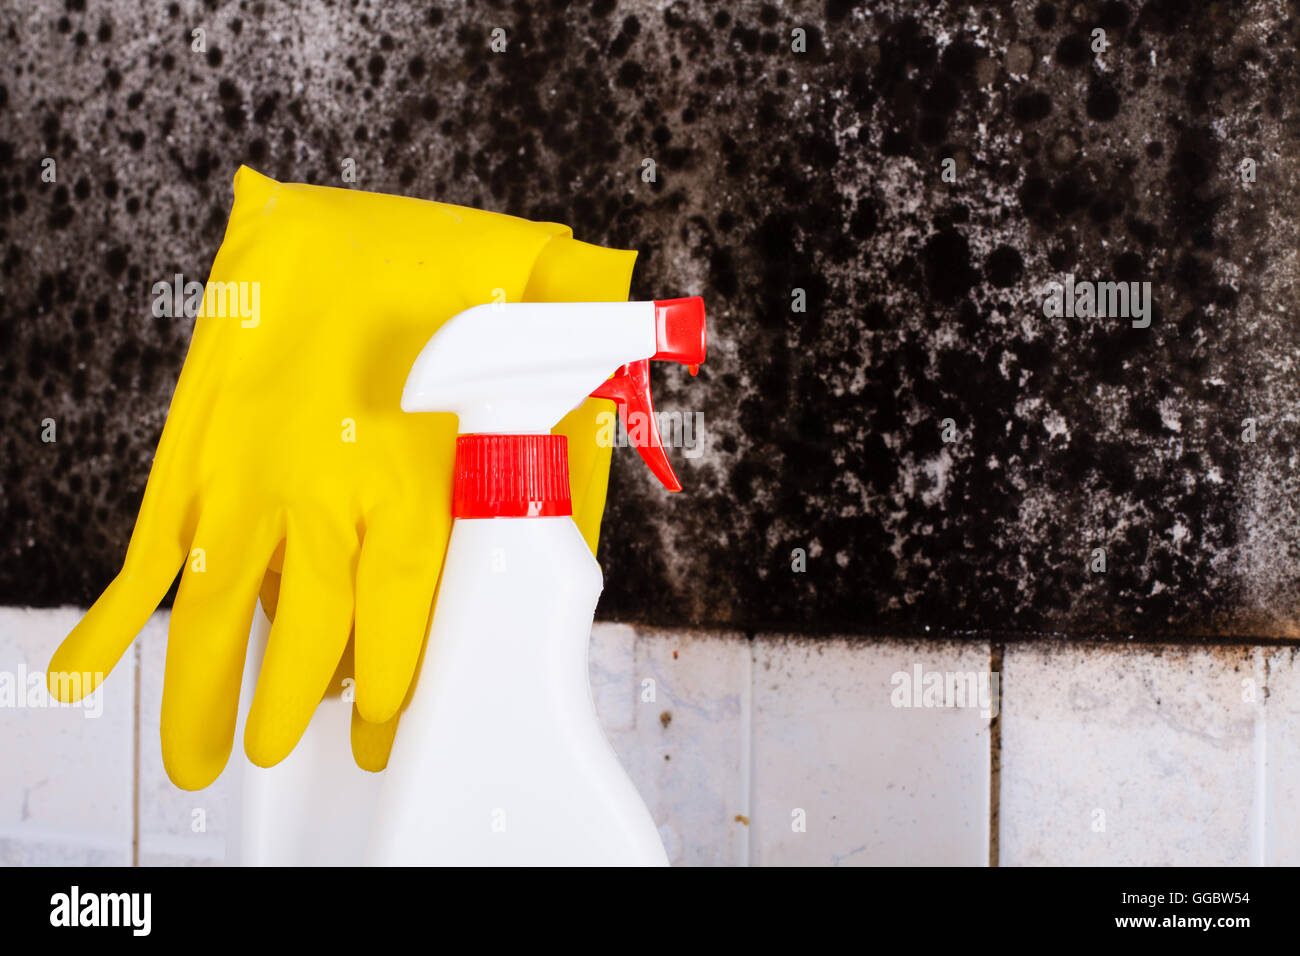 Vorbereitung zur Entfernung von Schimmel und gelb Handschuhe gegen den Schimmel an der Wand. Stockfoto